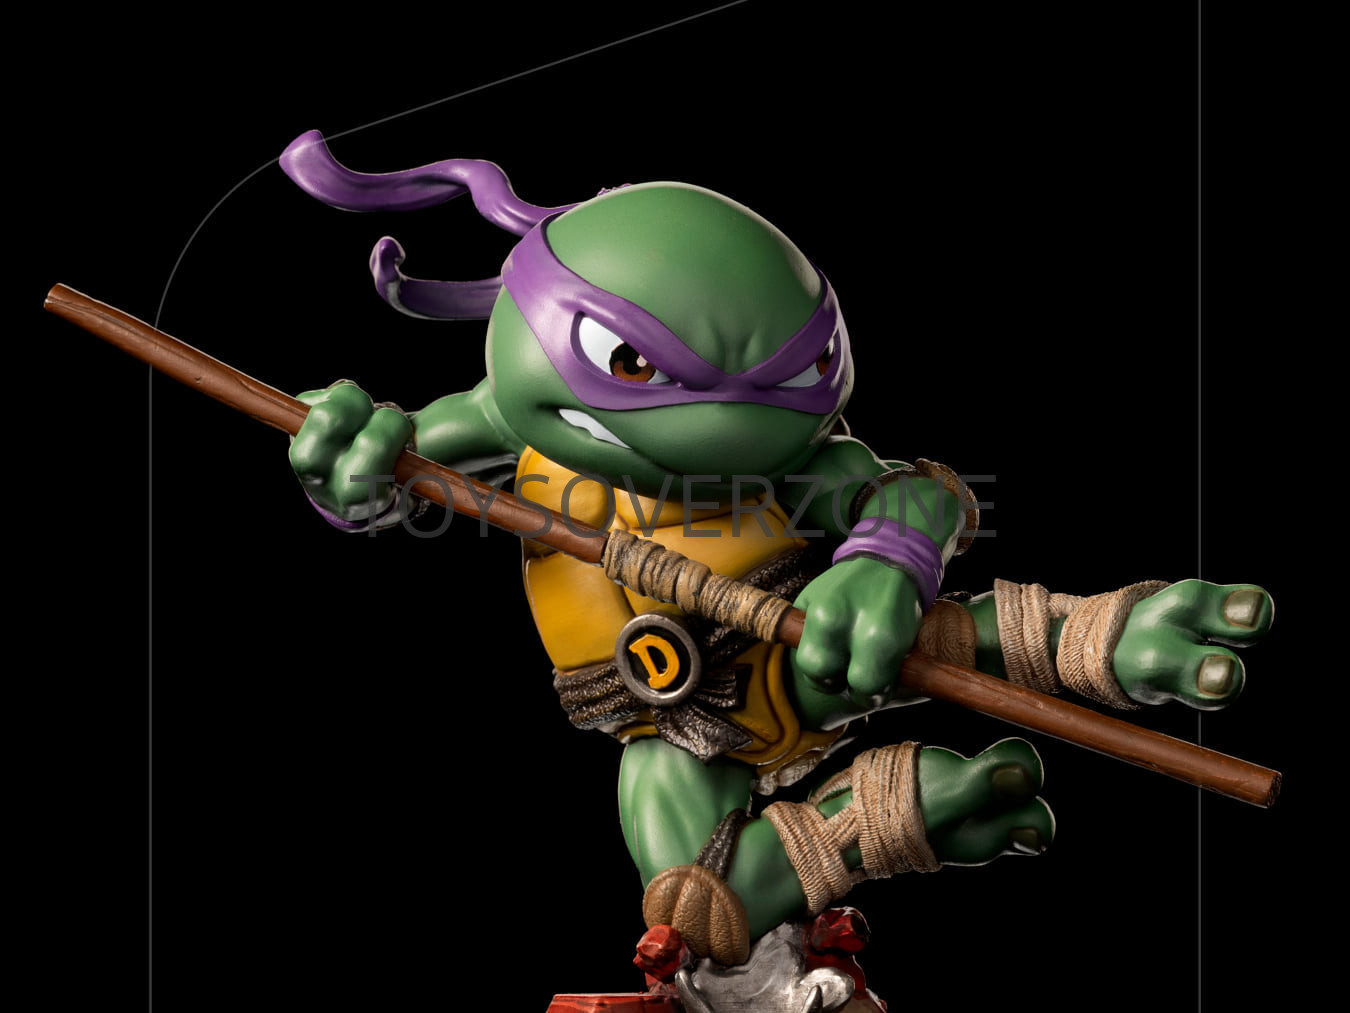 Teenage Mutant Ninja Turtles Donatello MiniCo. Vinyl Figure